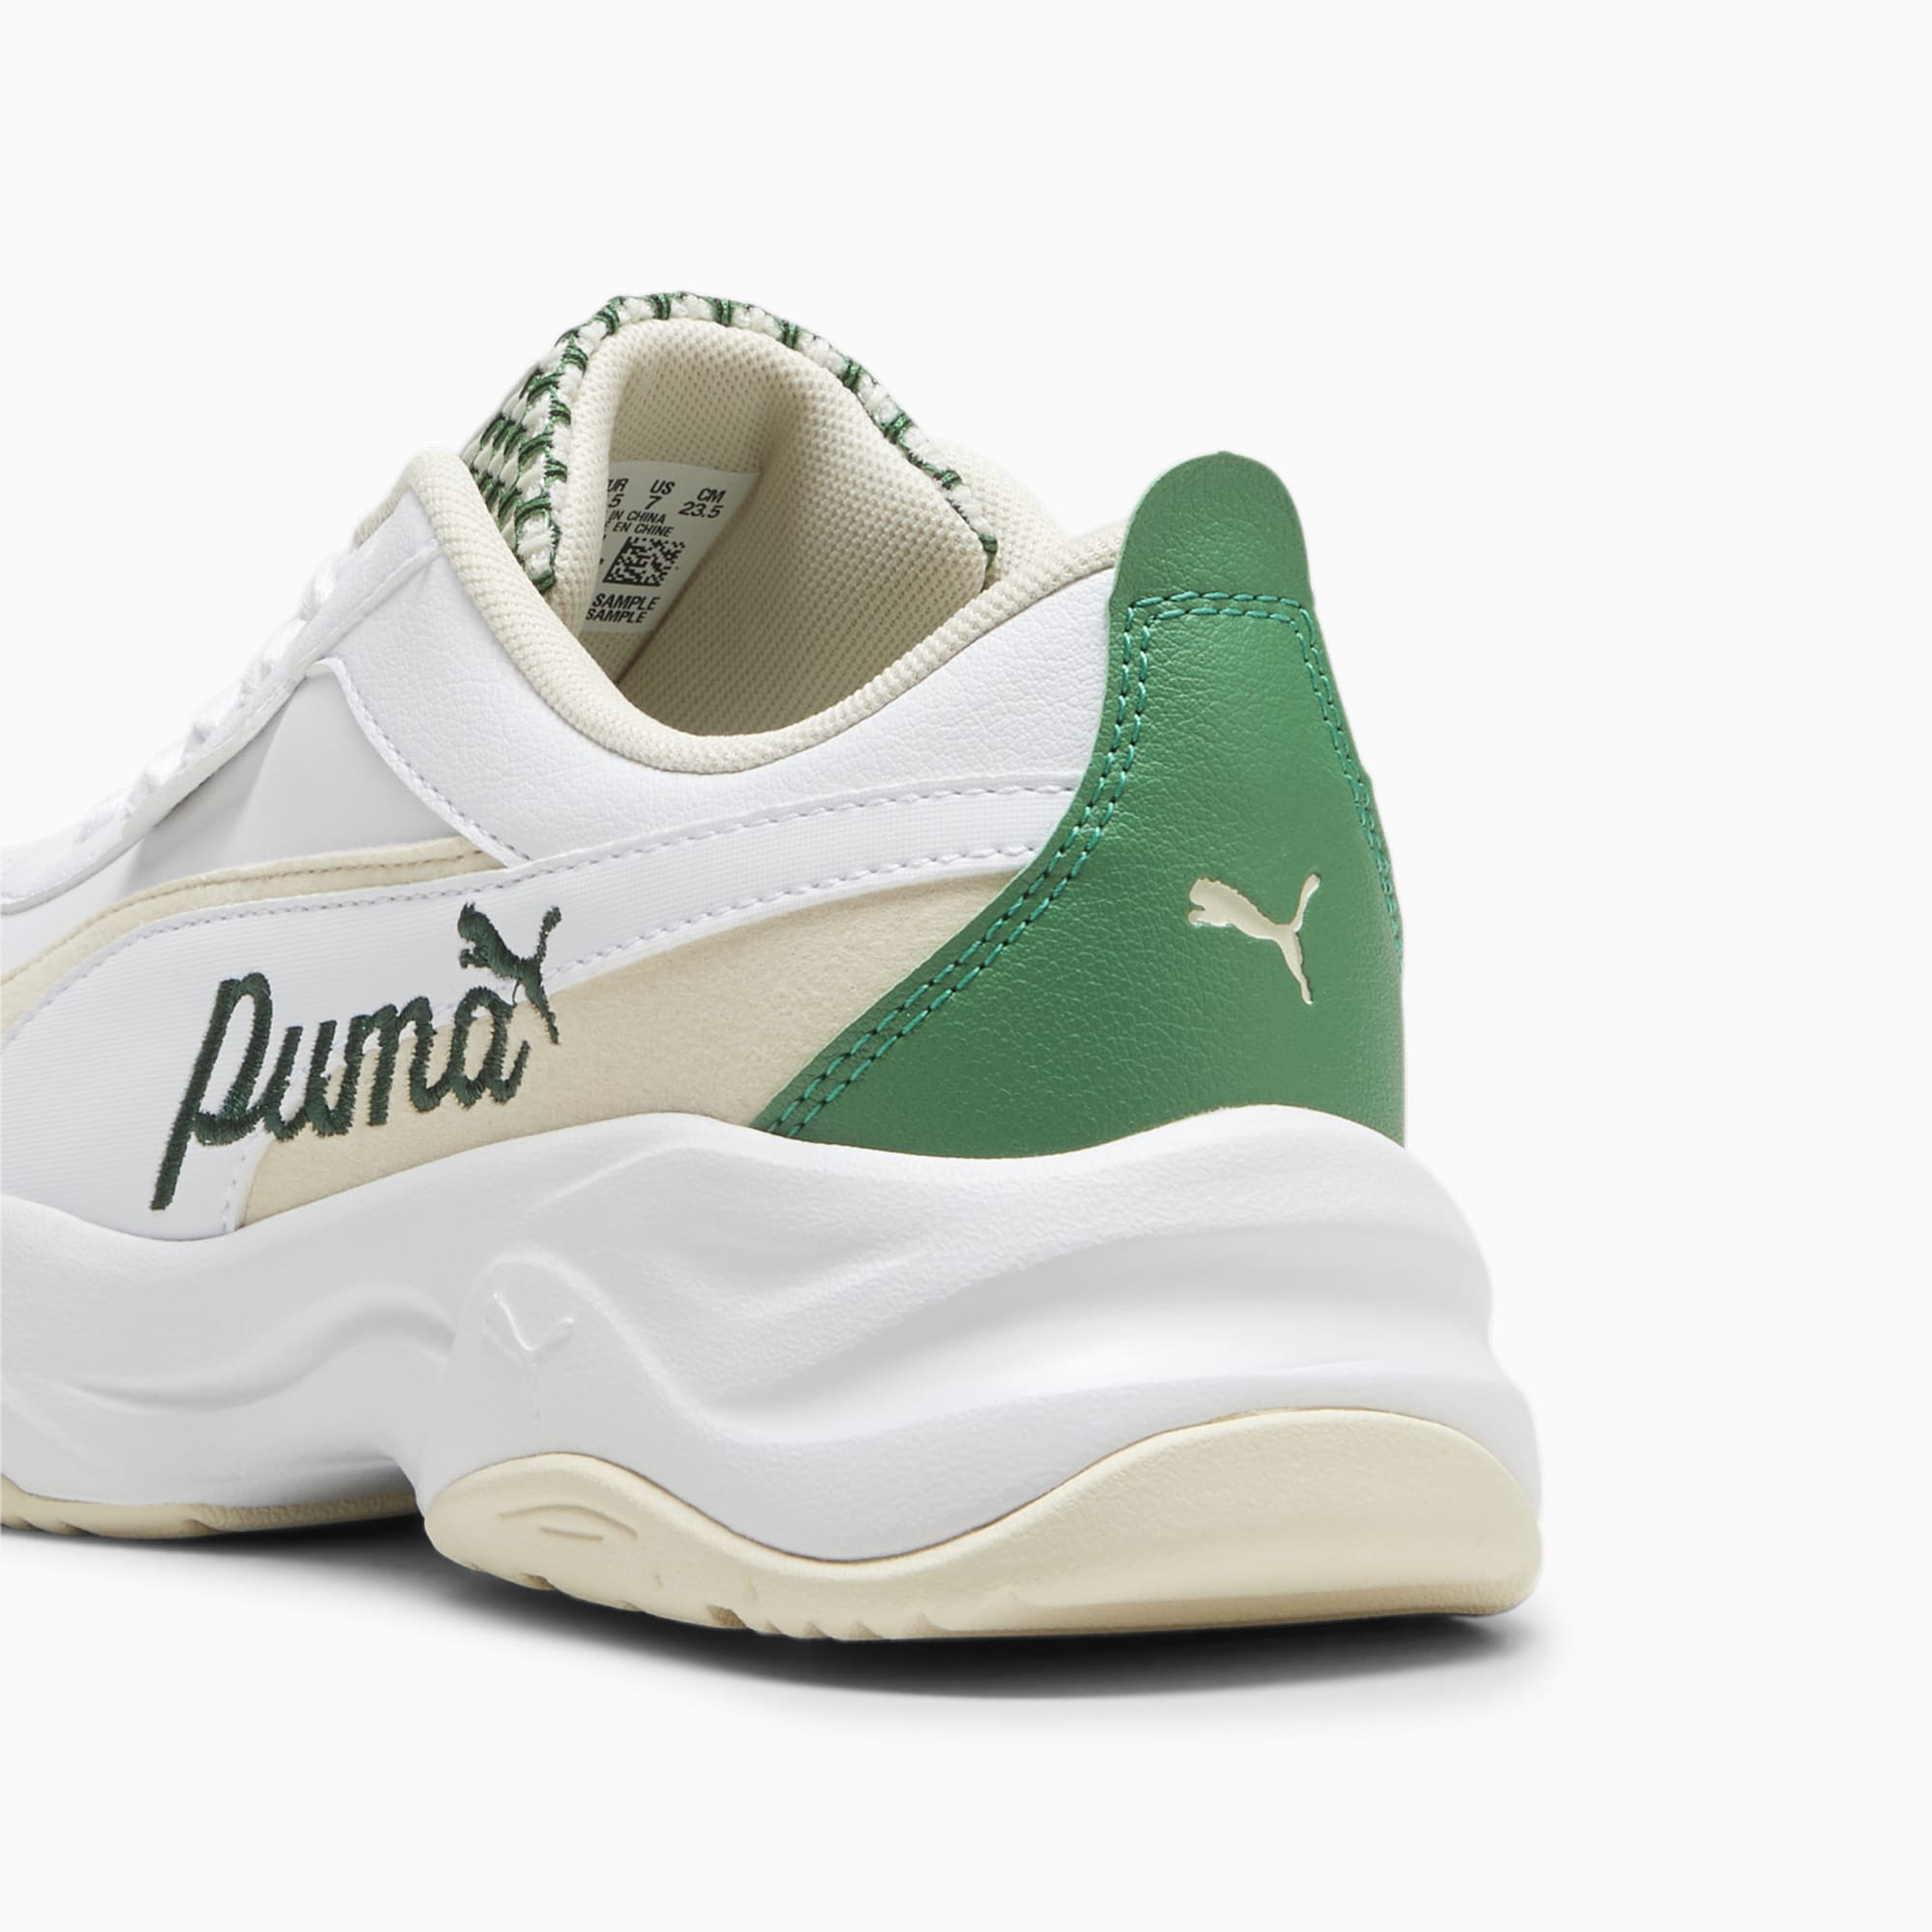 Women's PUMA Cilia Mode Blossom Sneakers, White/Sugared Almond/Pure Green